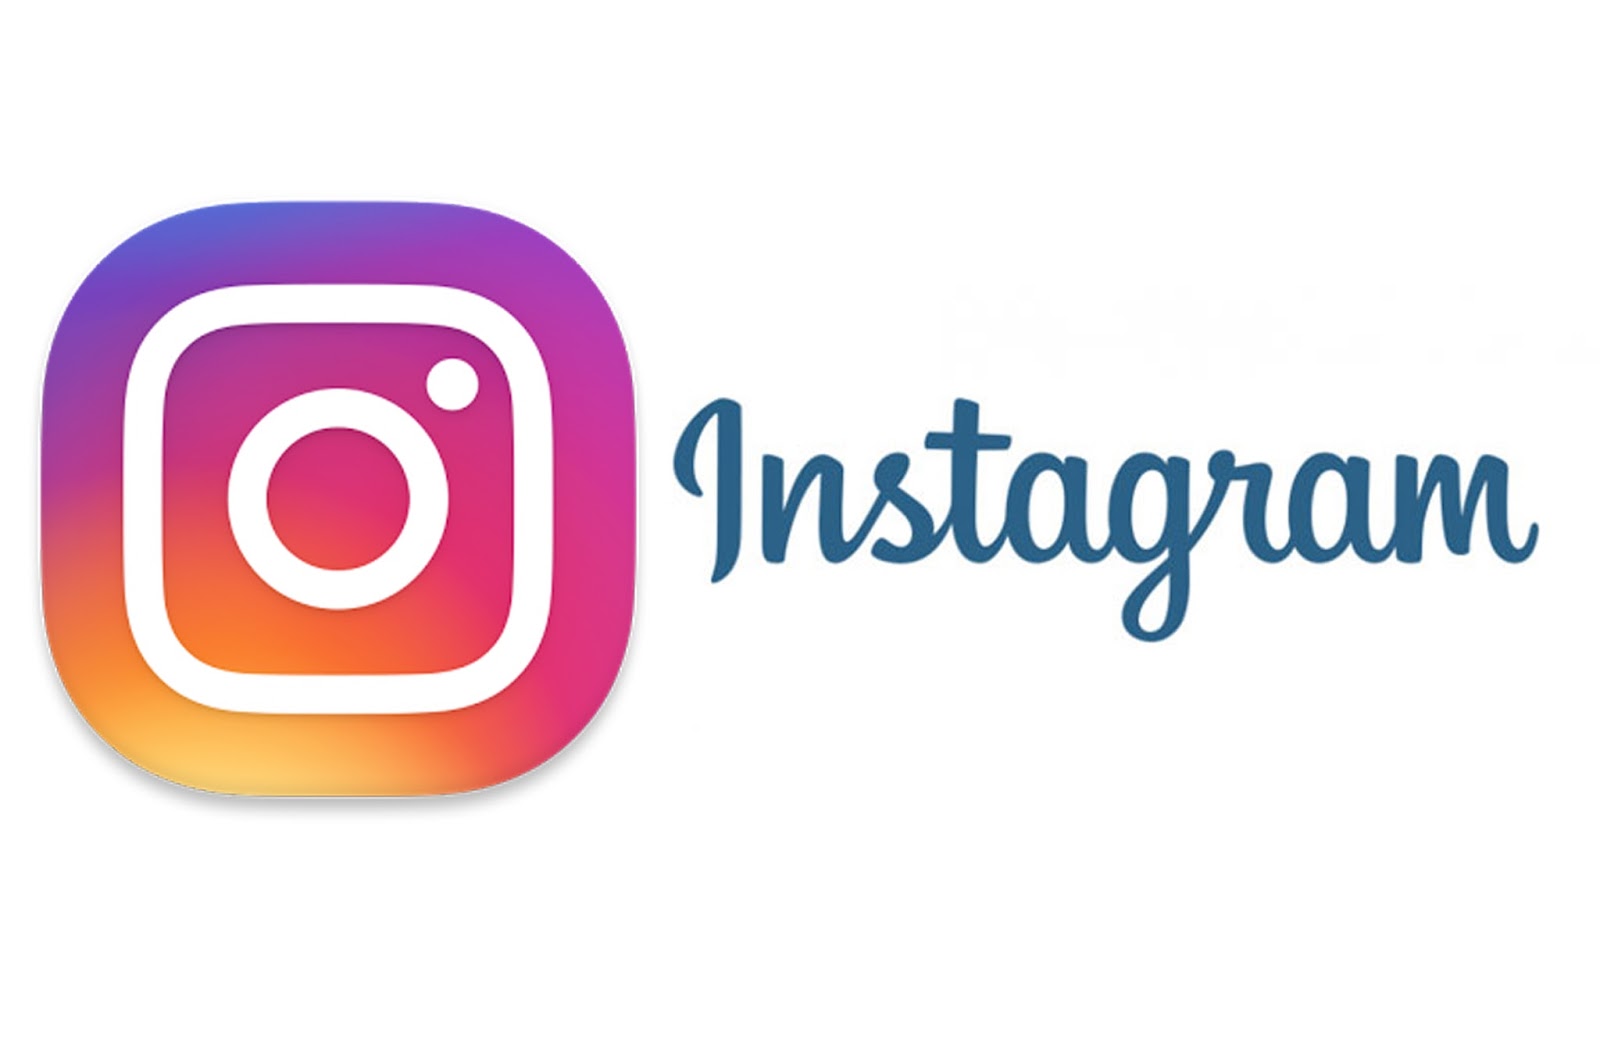 Jak dodawać zdjęcia na Instagram przez komuter